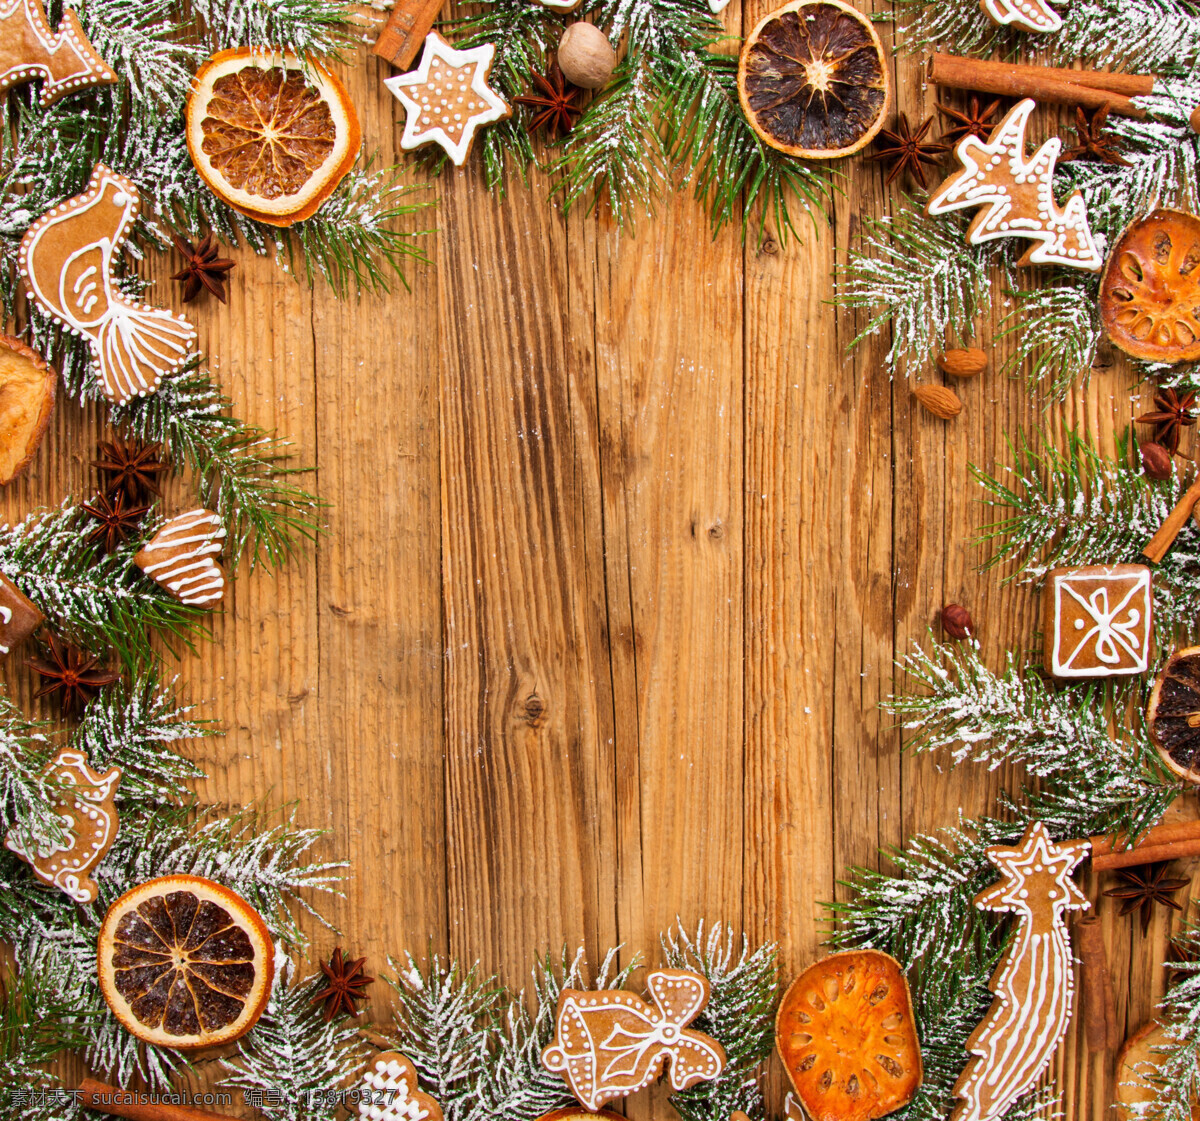 圣诞 装饰 桌面 树枝 装饰品 圣诞节 节日庆典 生活百科